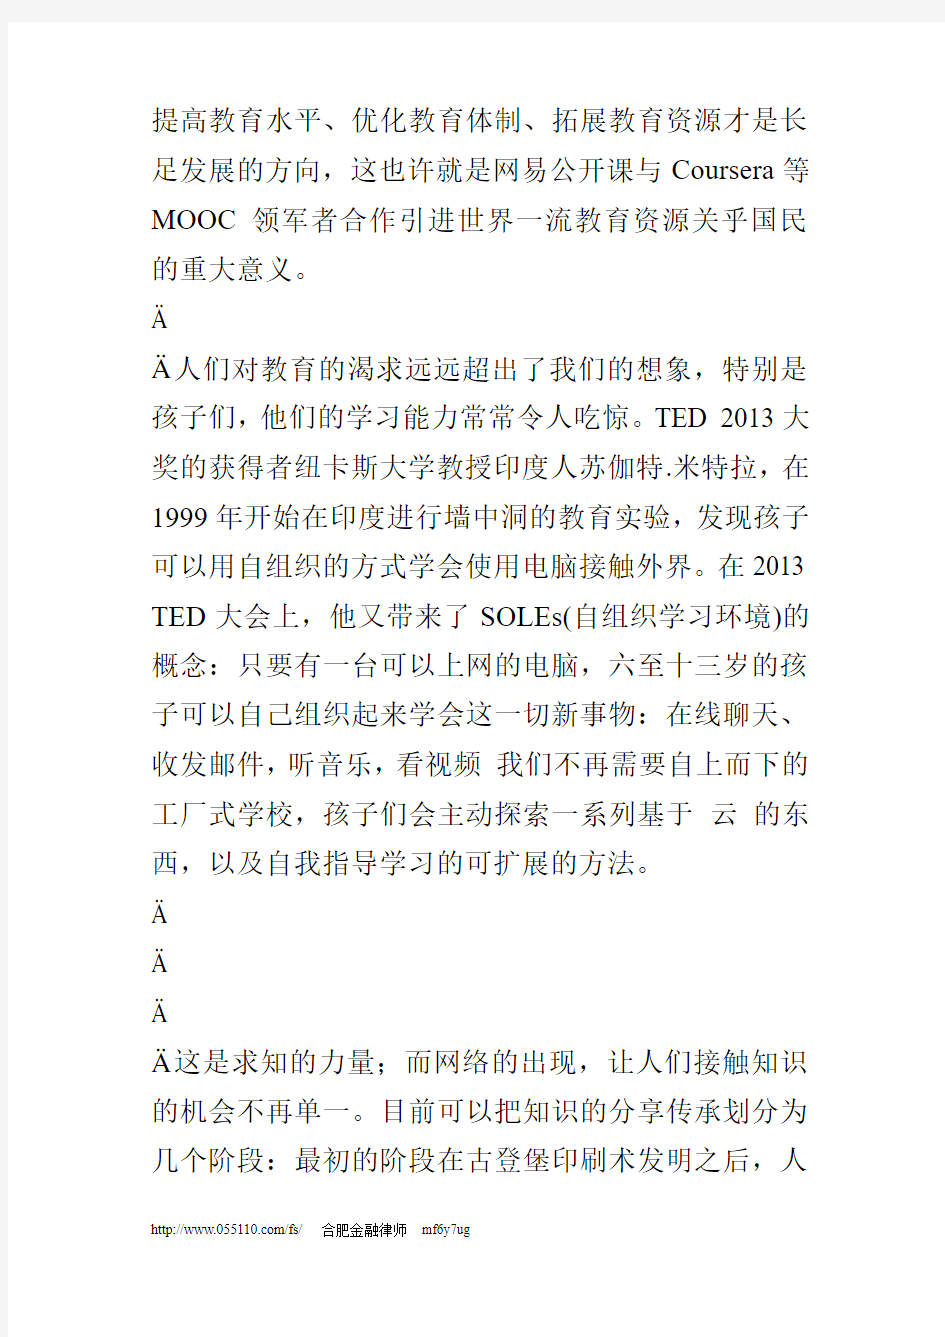 精选网易公开课引进MOOC推动中国教育变革